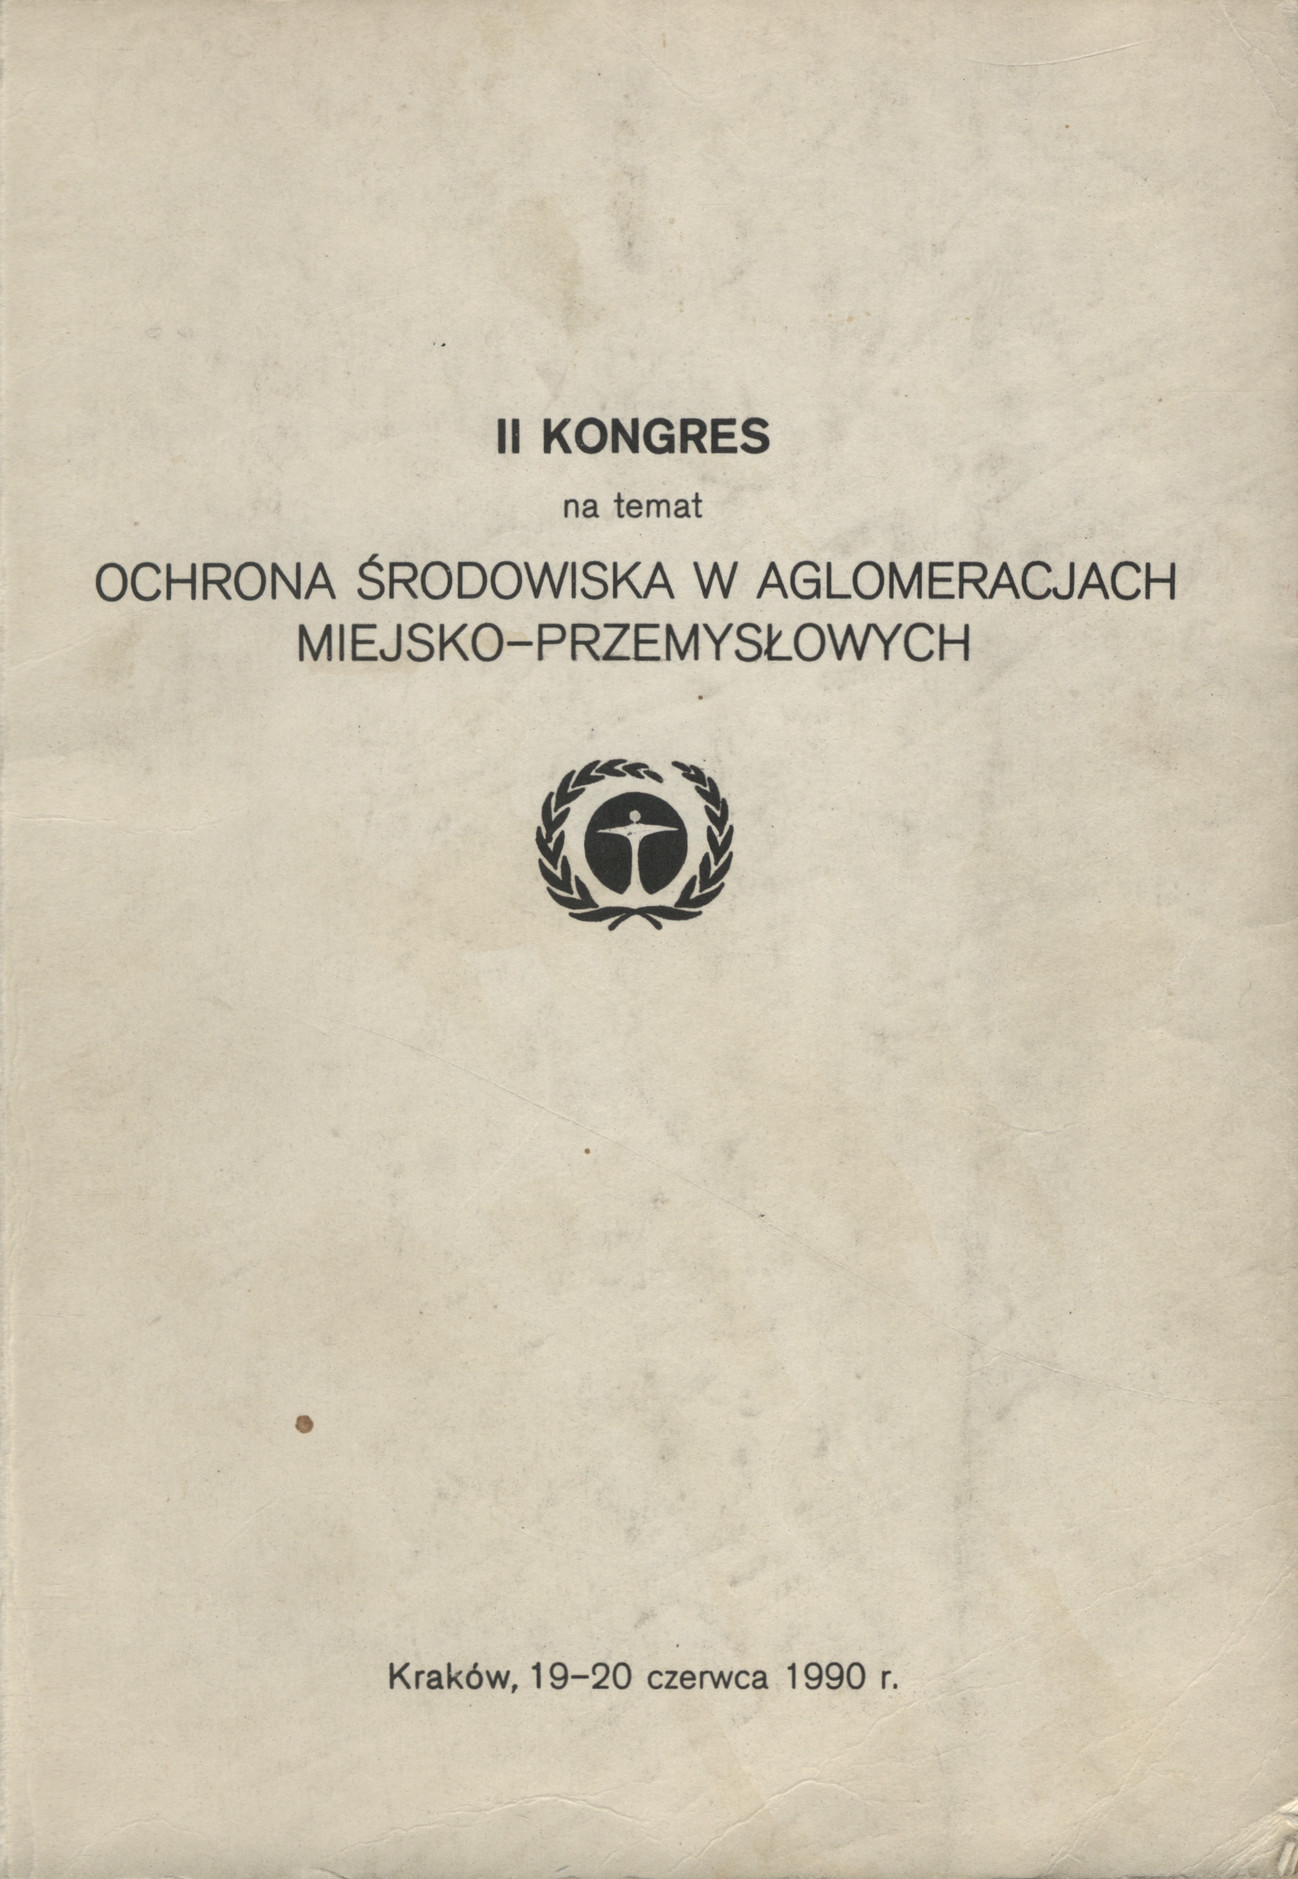 2 Kongres na temat Ochrona środowiska w aglomeracjach miejsko-przemysłowych. Kraków, 19-20 czerwca 1990 r.